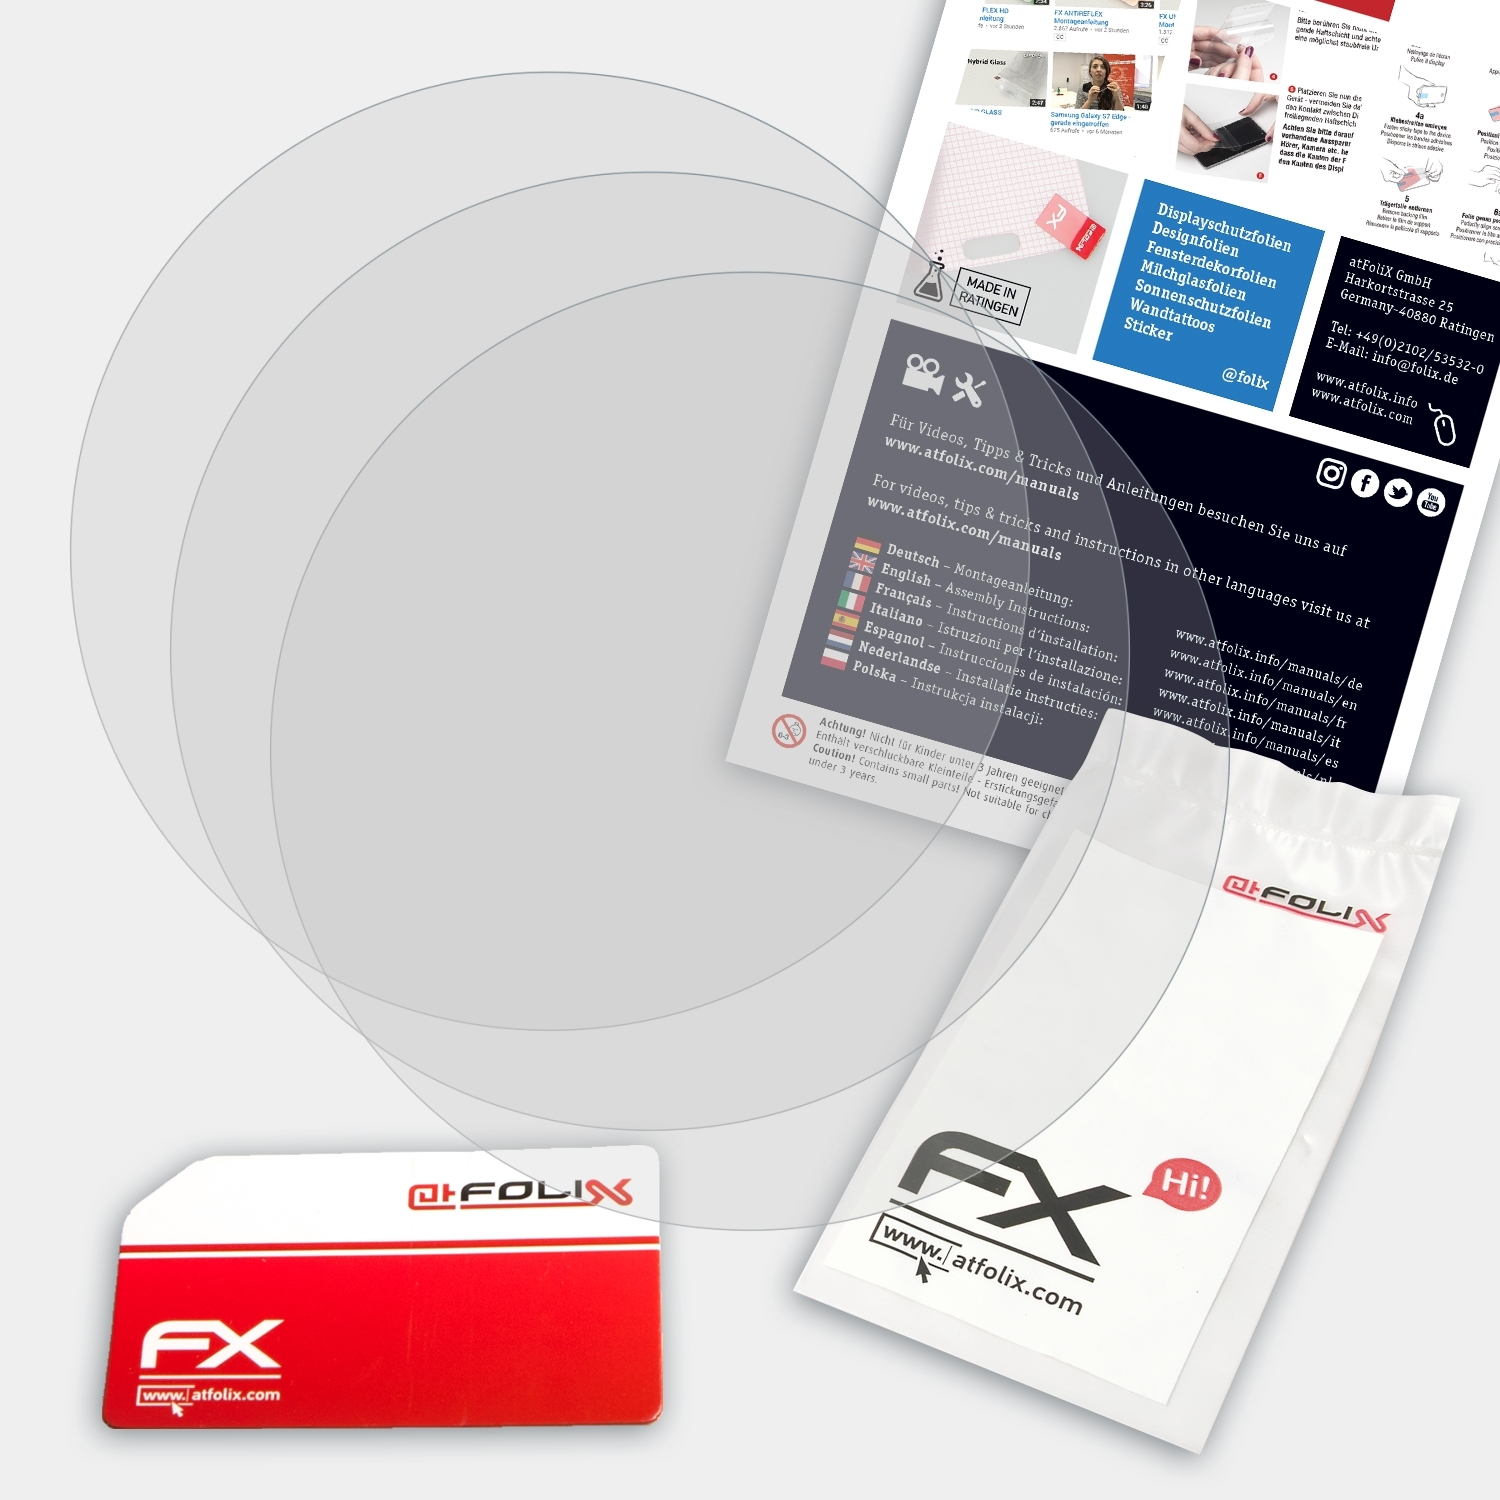 ATFOLIX 3x FX-Antireflex MyKronoz ZeTime Elite (Petite)) Displayschutz(für